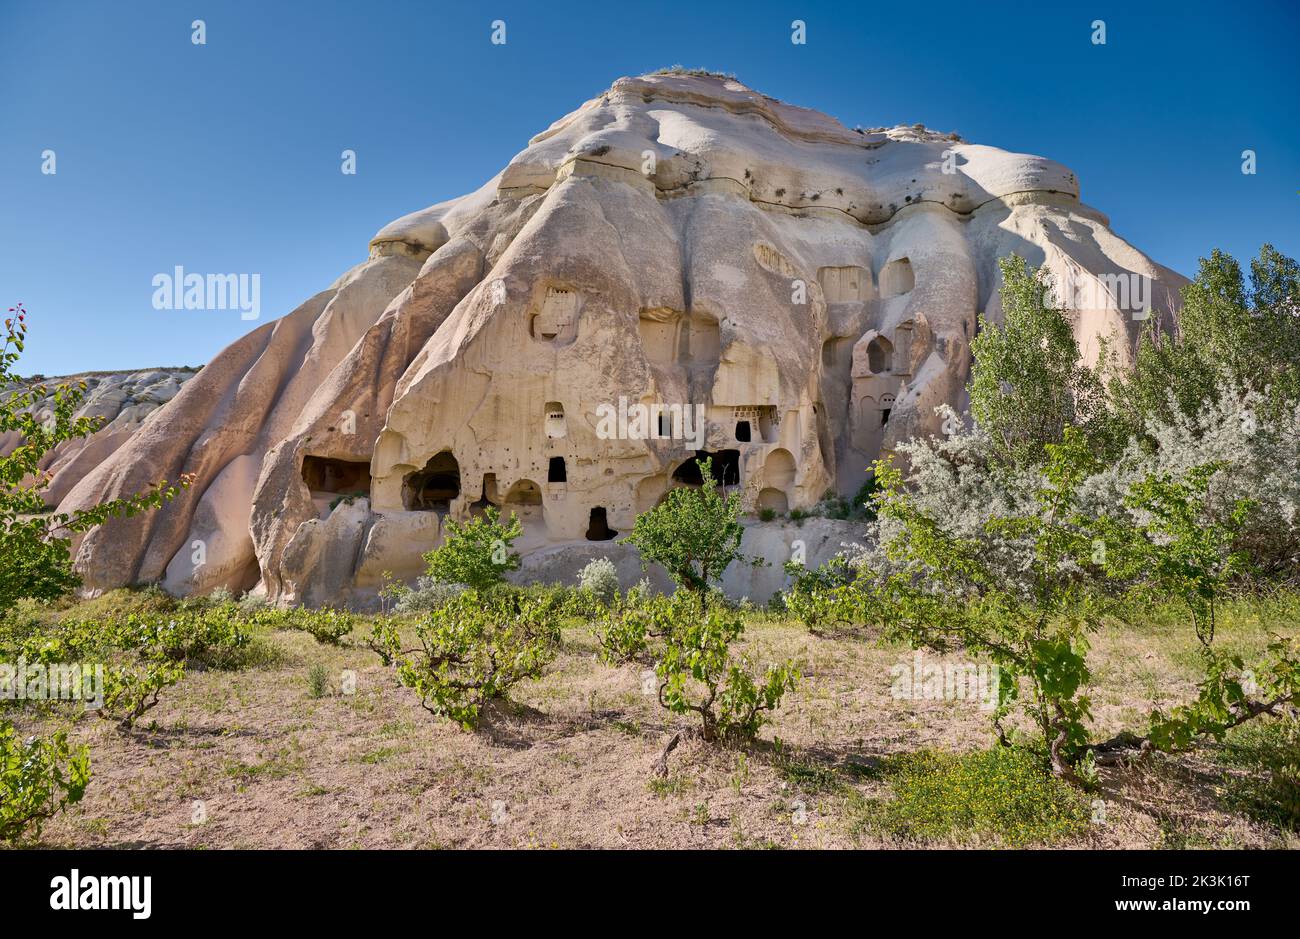 Maisons en pierre sculptée ou maisons de grotte dans le paysage de la vallée de la Rose Goreme, Cappadoce, Anatolie, Turquie Banque D'Images